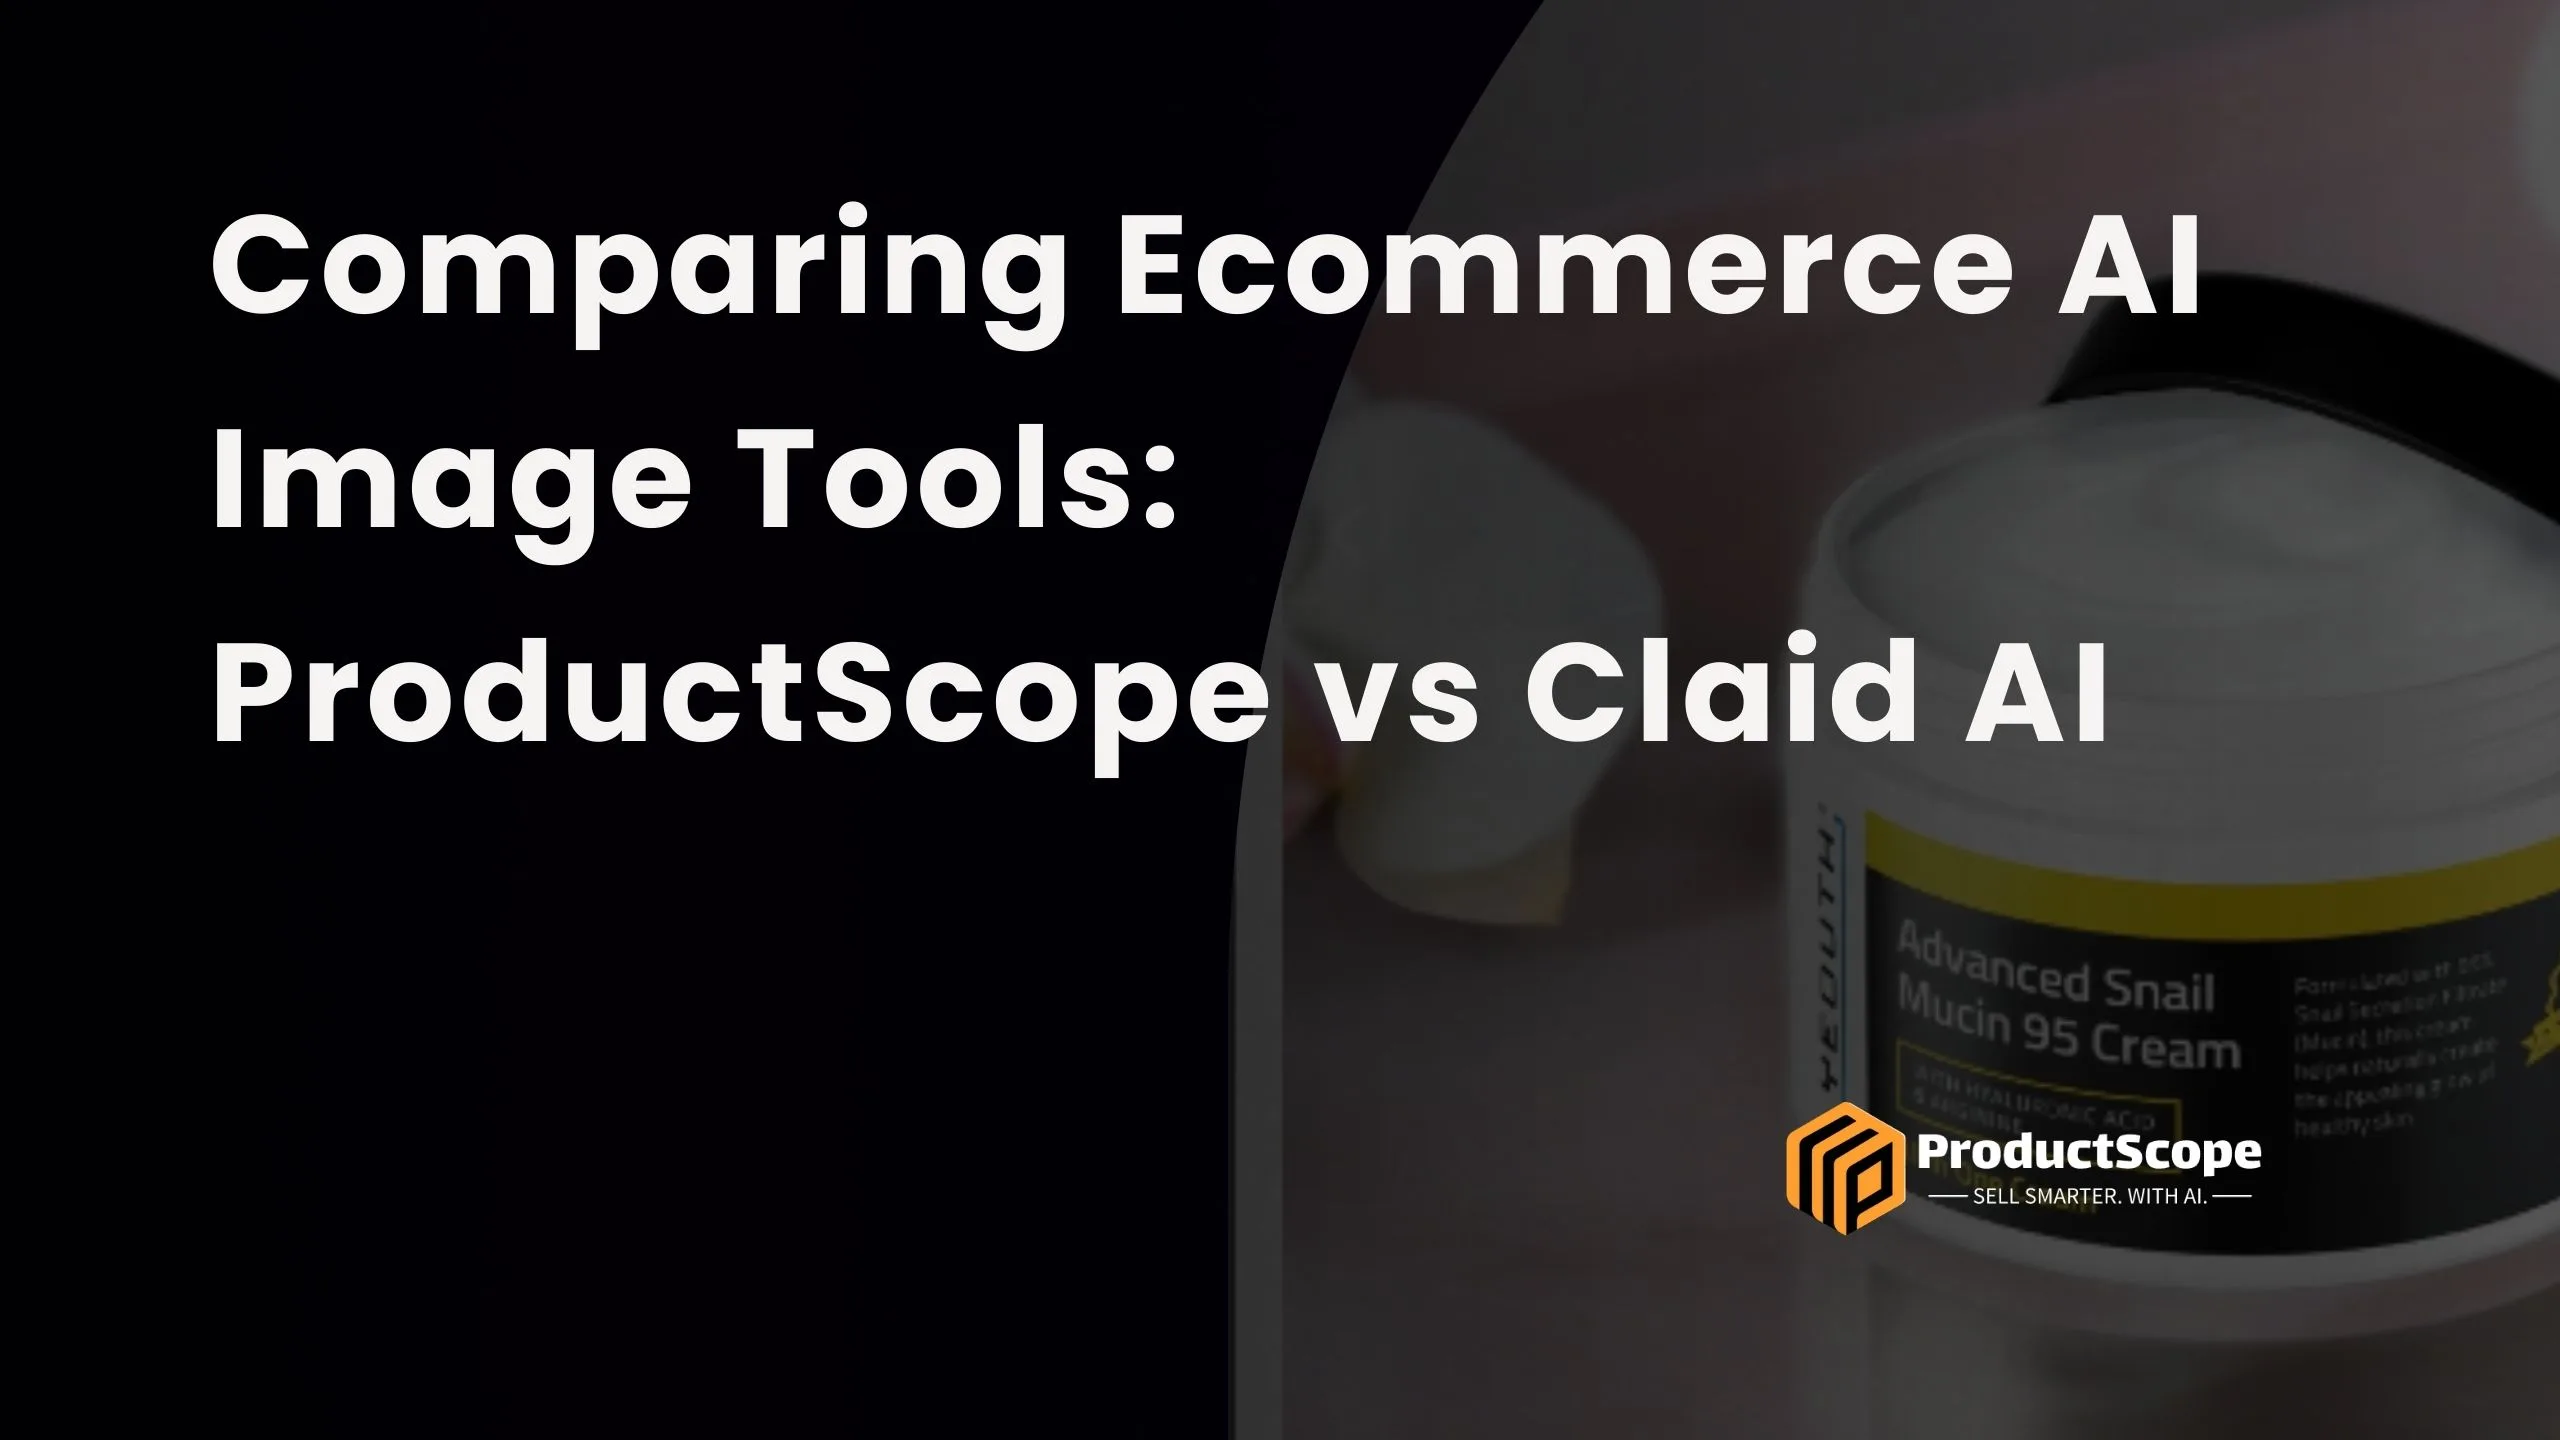 Comparing Ecommerce AI Image Tools: ProductScope vs Claid AI